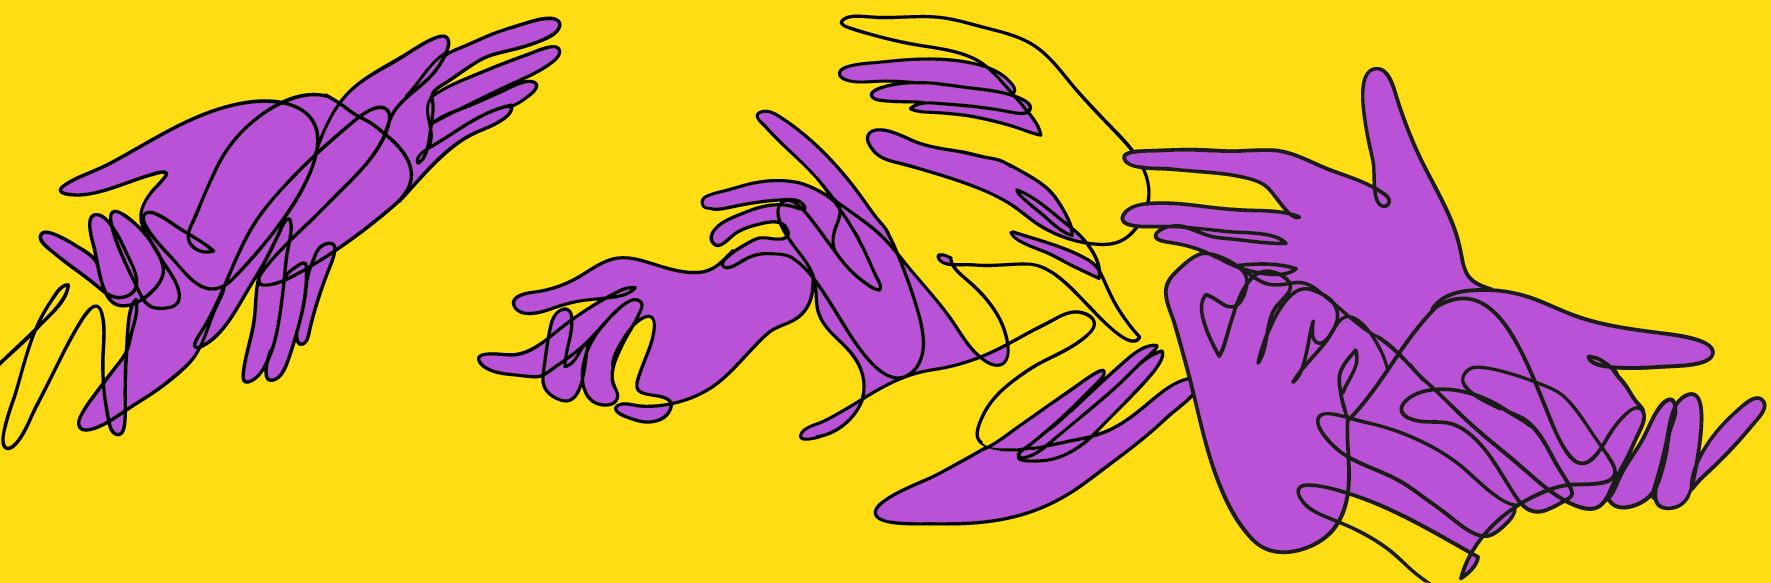 Stilisierte lila Hände auf gelbem Hintergrund